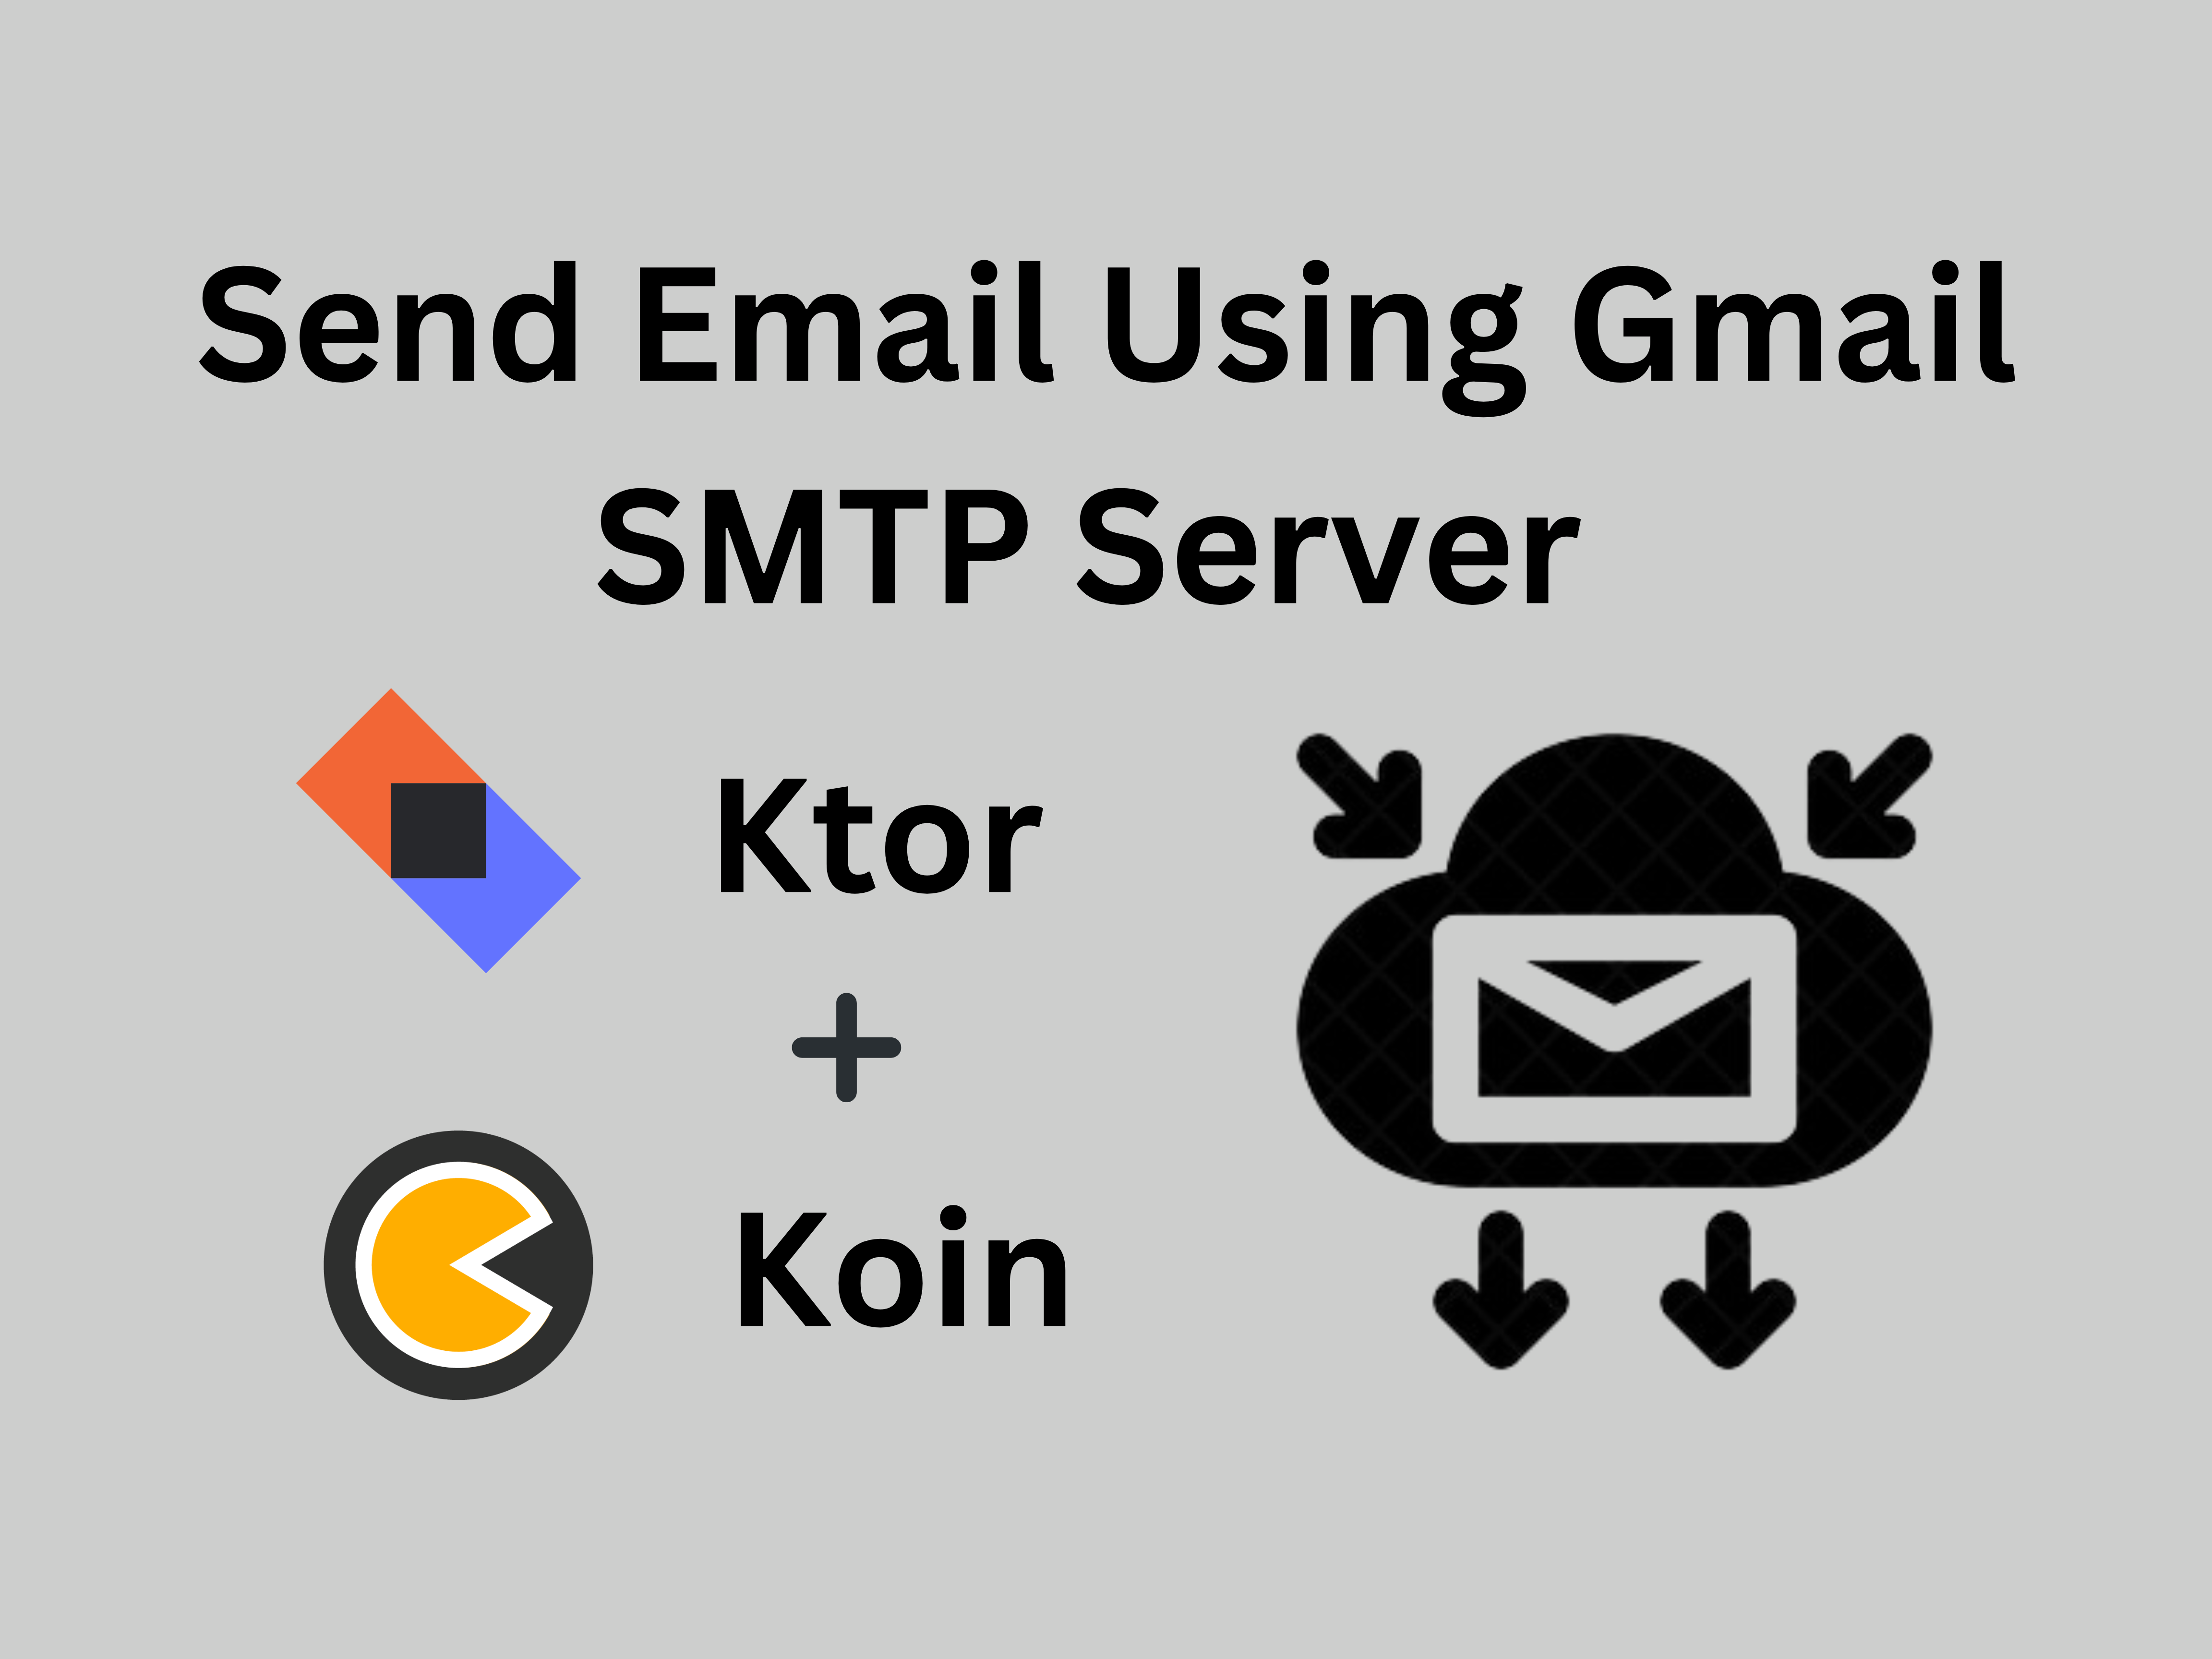 Building Ktor Server to Send Emails via Gmail SMTP Server